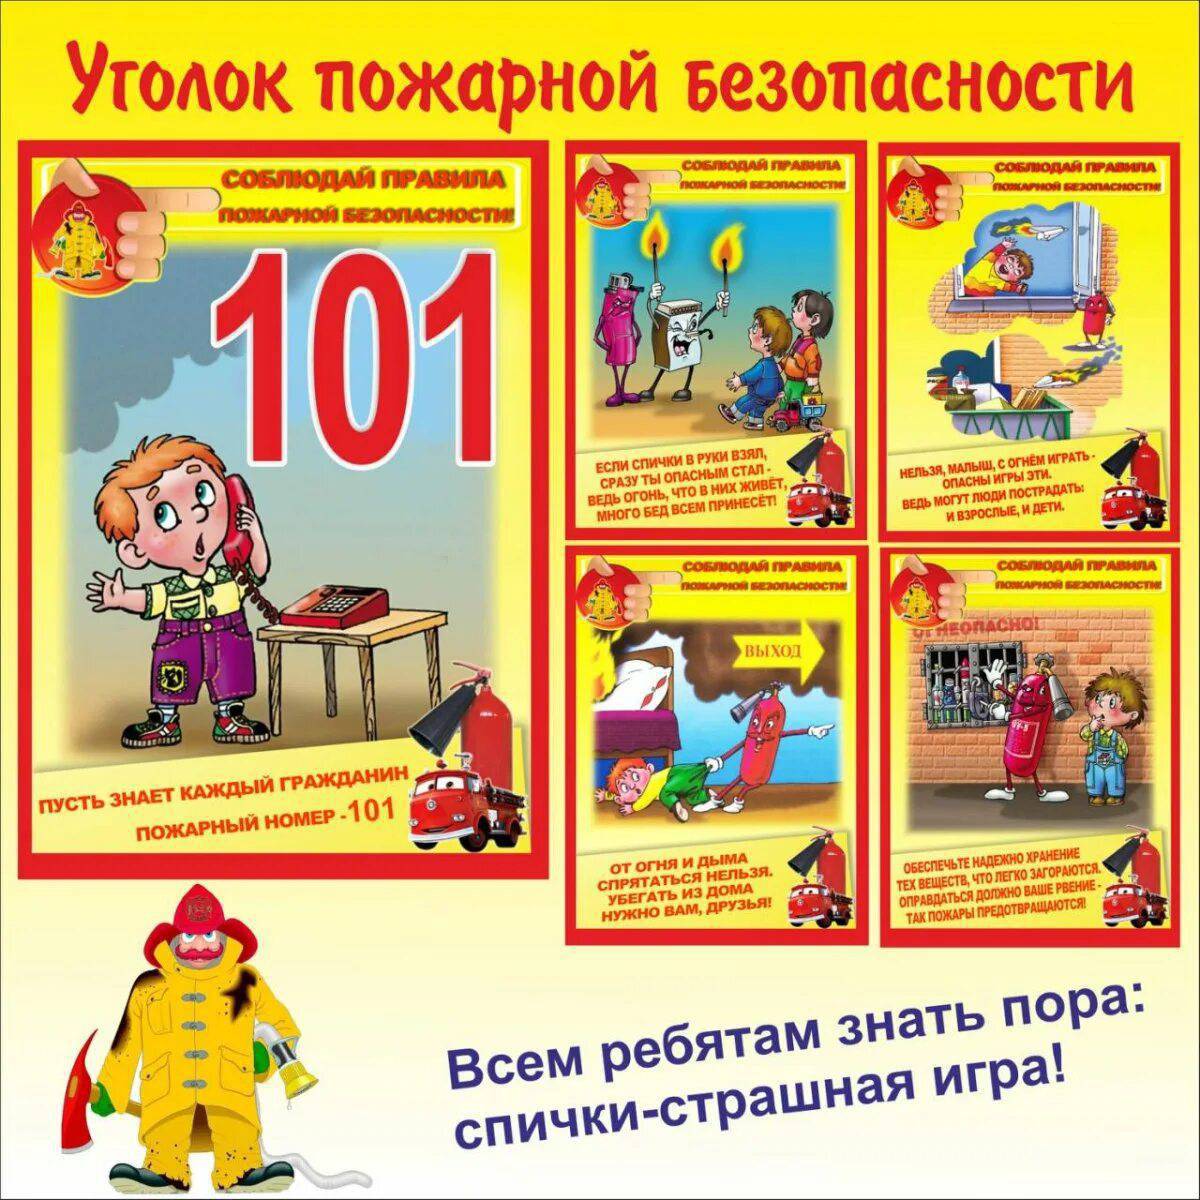 Пожарная безопасность для детей в детском саду #19